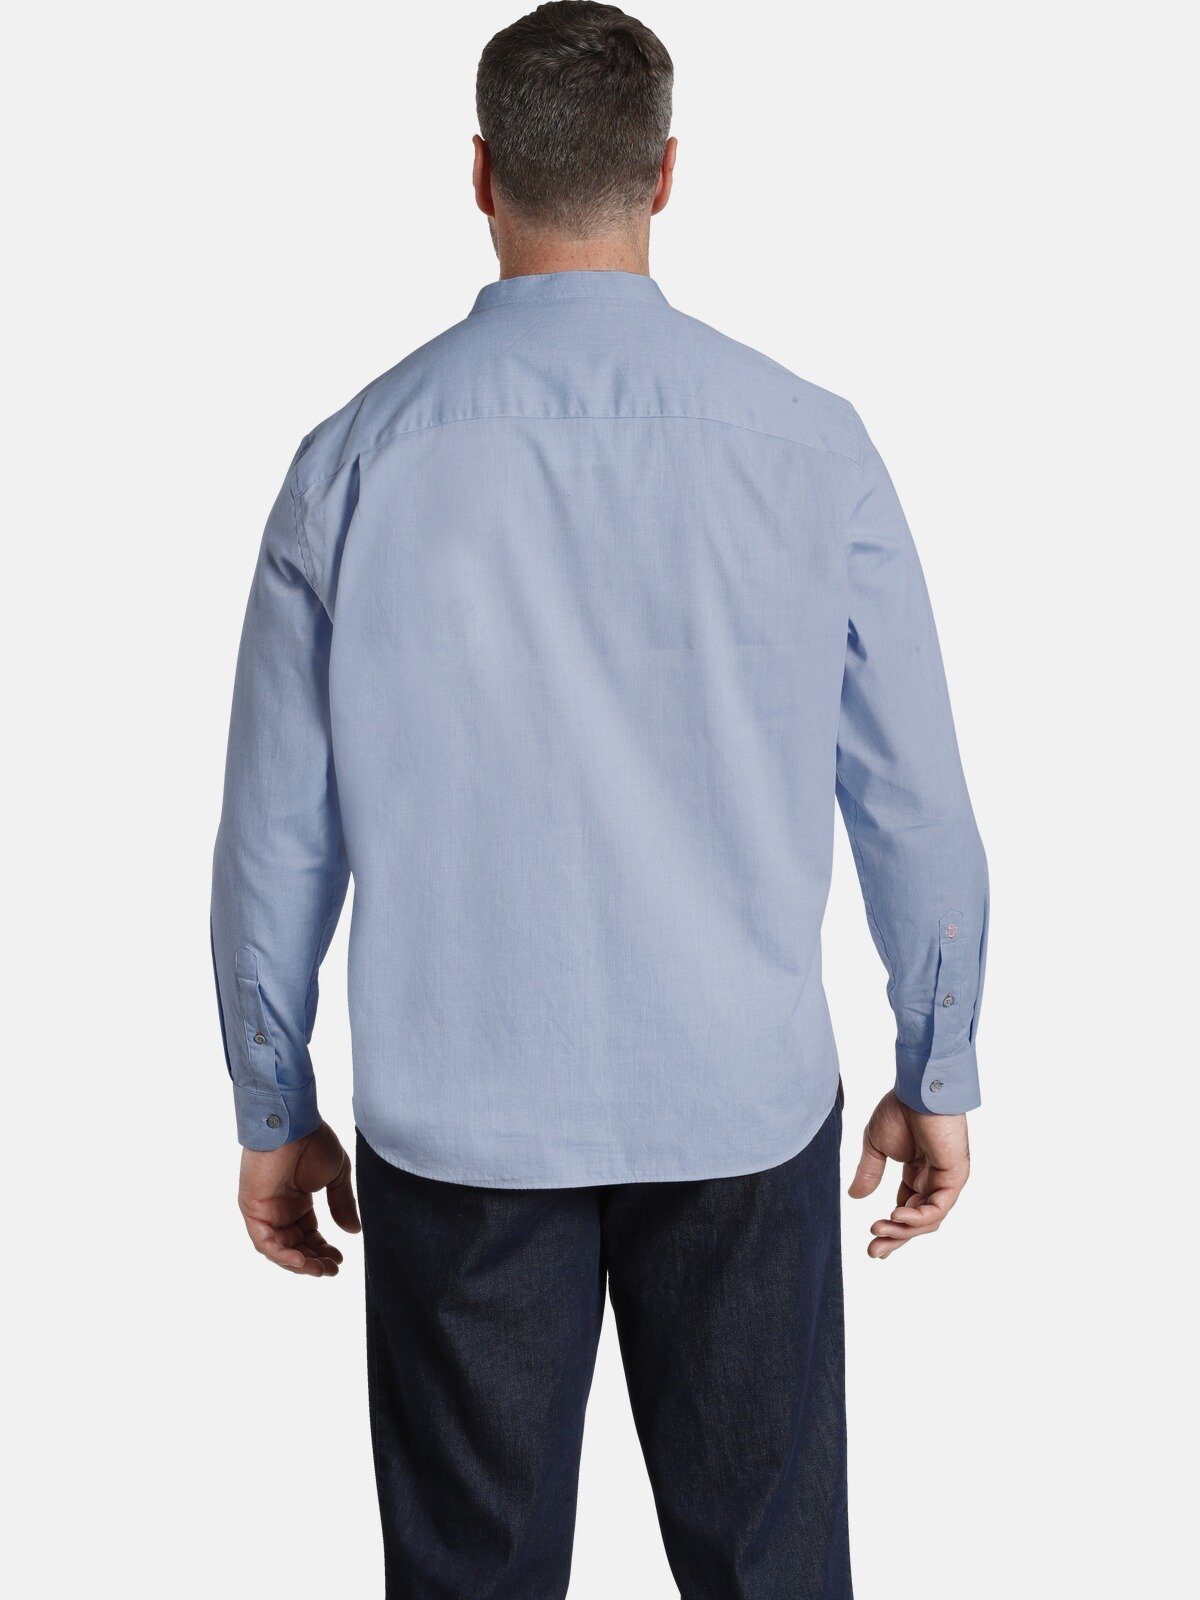 Colby Charles ALEC Strukturware Langarmhemd eleganter hellblau aus EARL